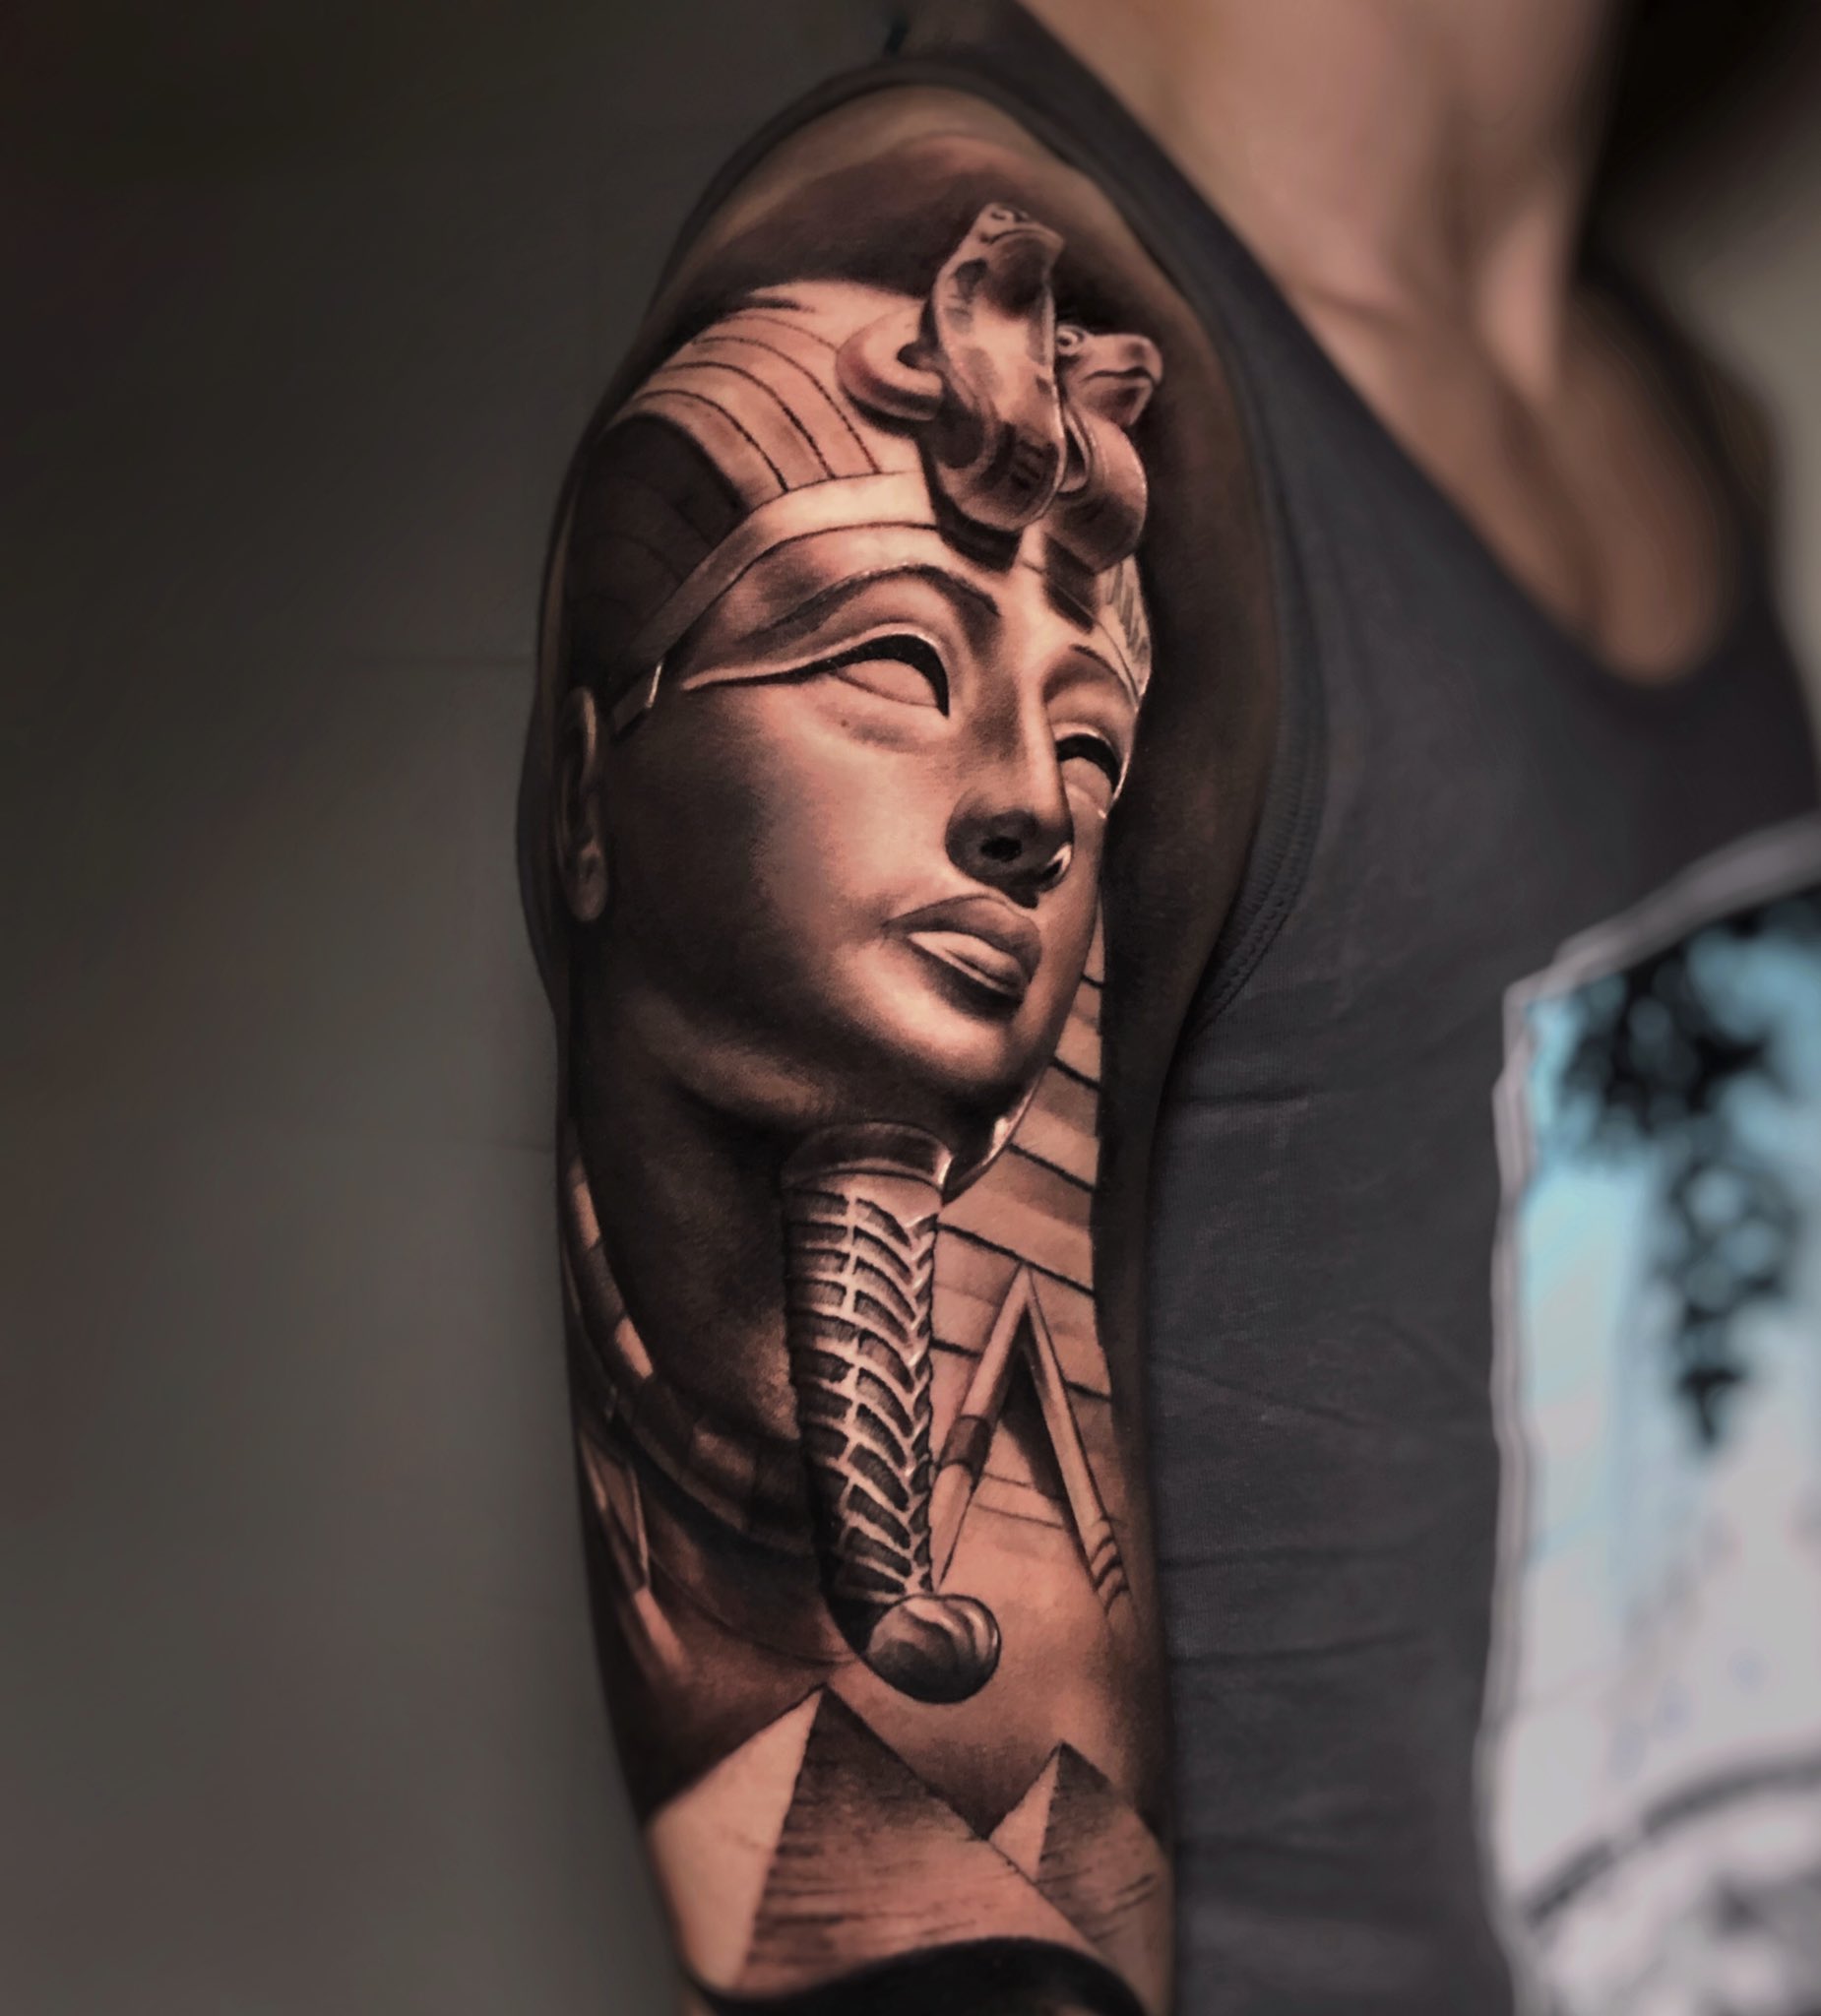 X \ J o s e m a z a على X: "Tatuaje tematica egipcia #egipto #tattoo # tatuaje https://t.co/4blR0F8dnr"